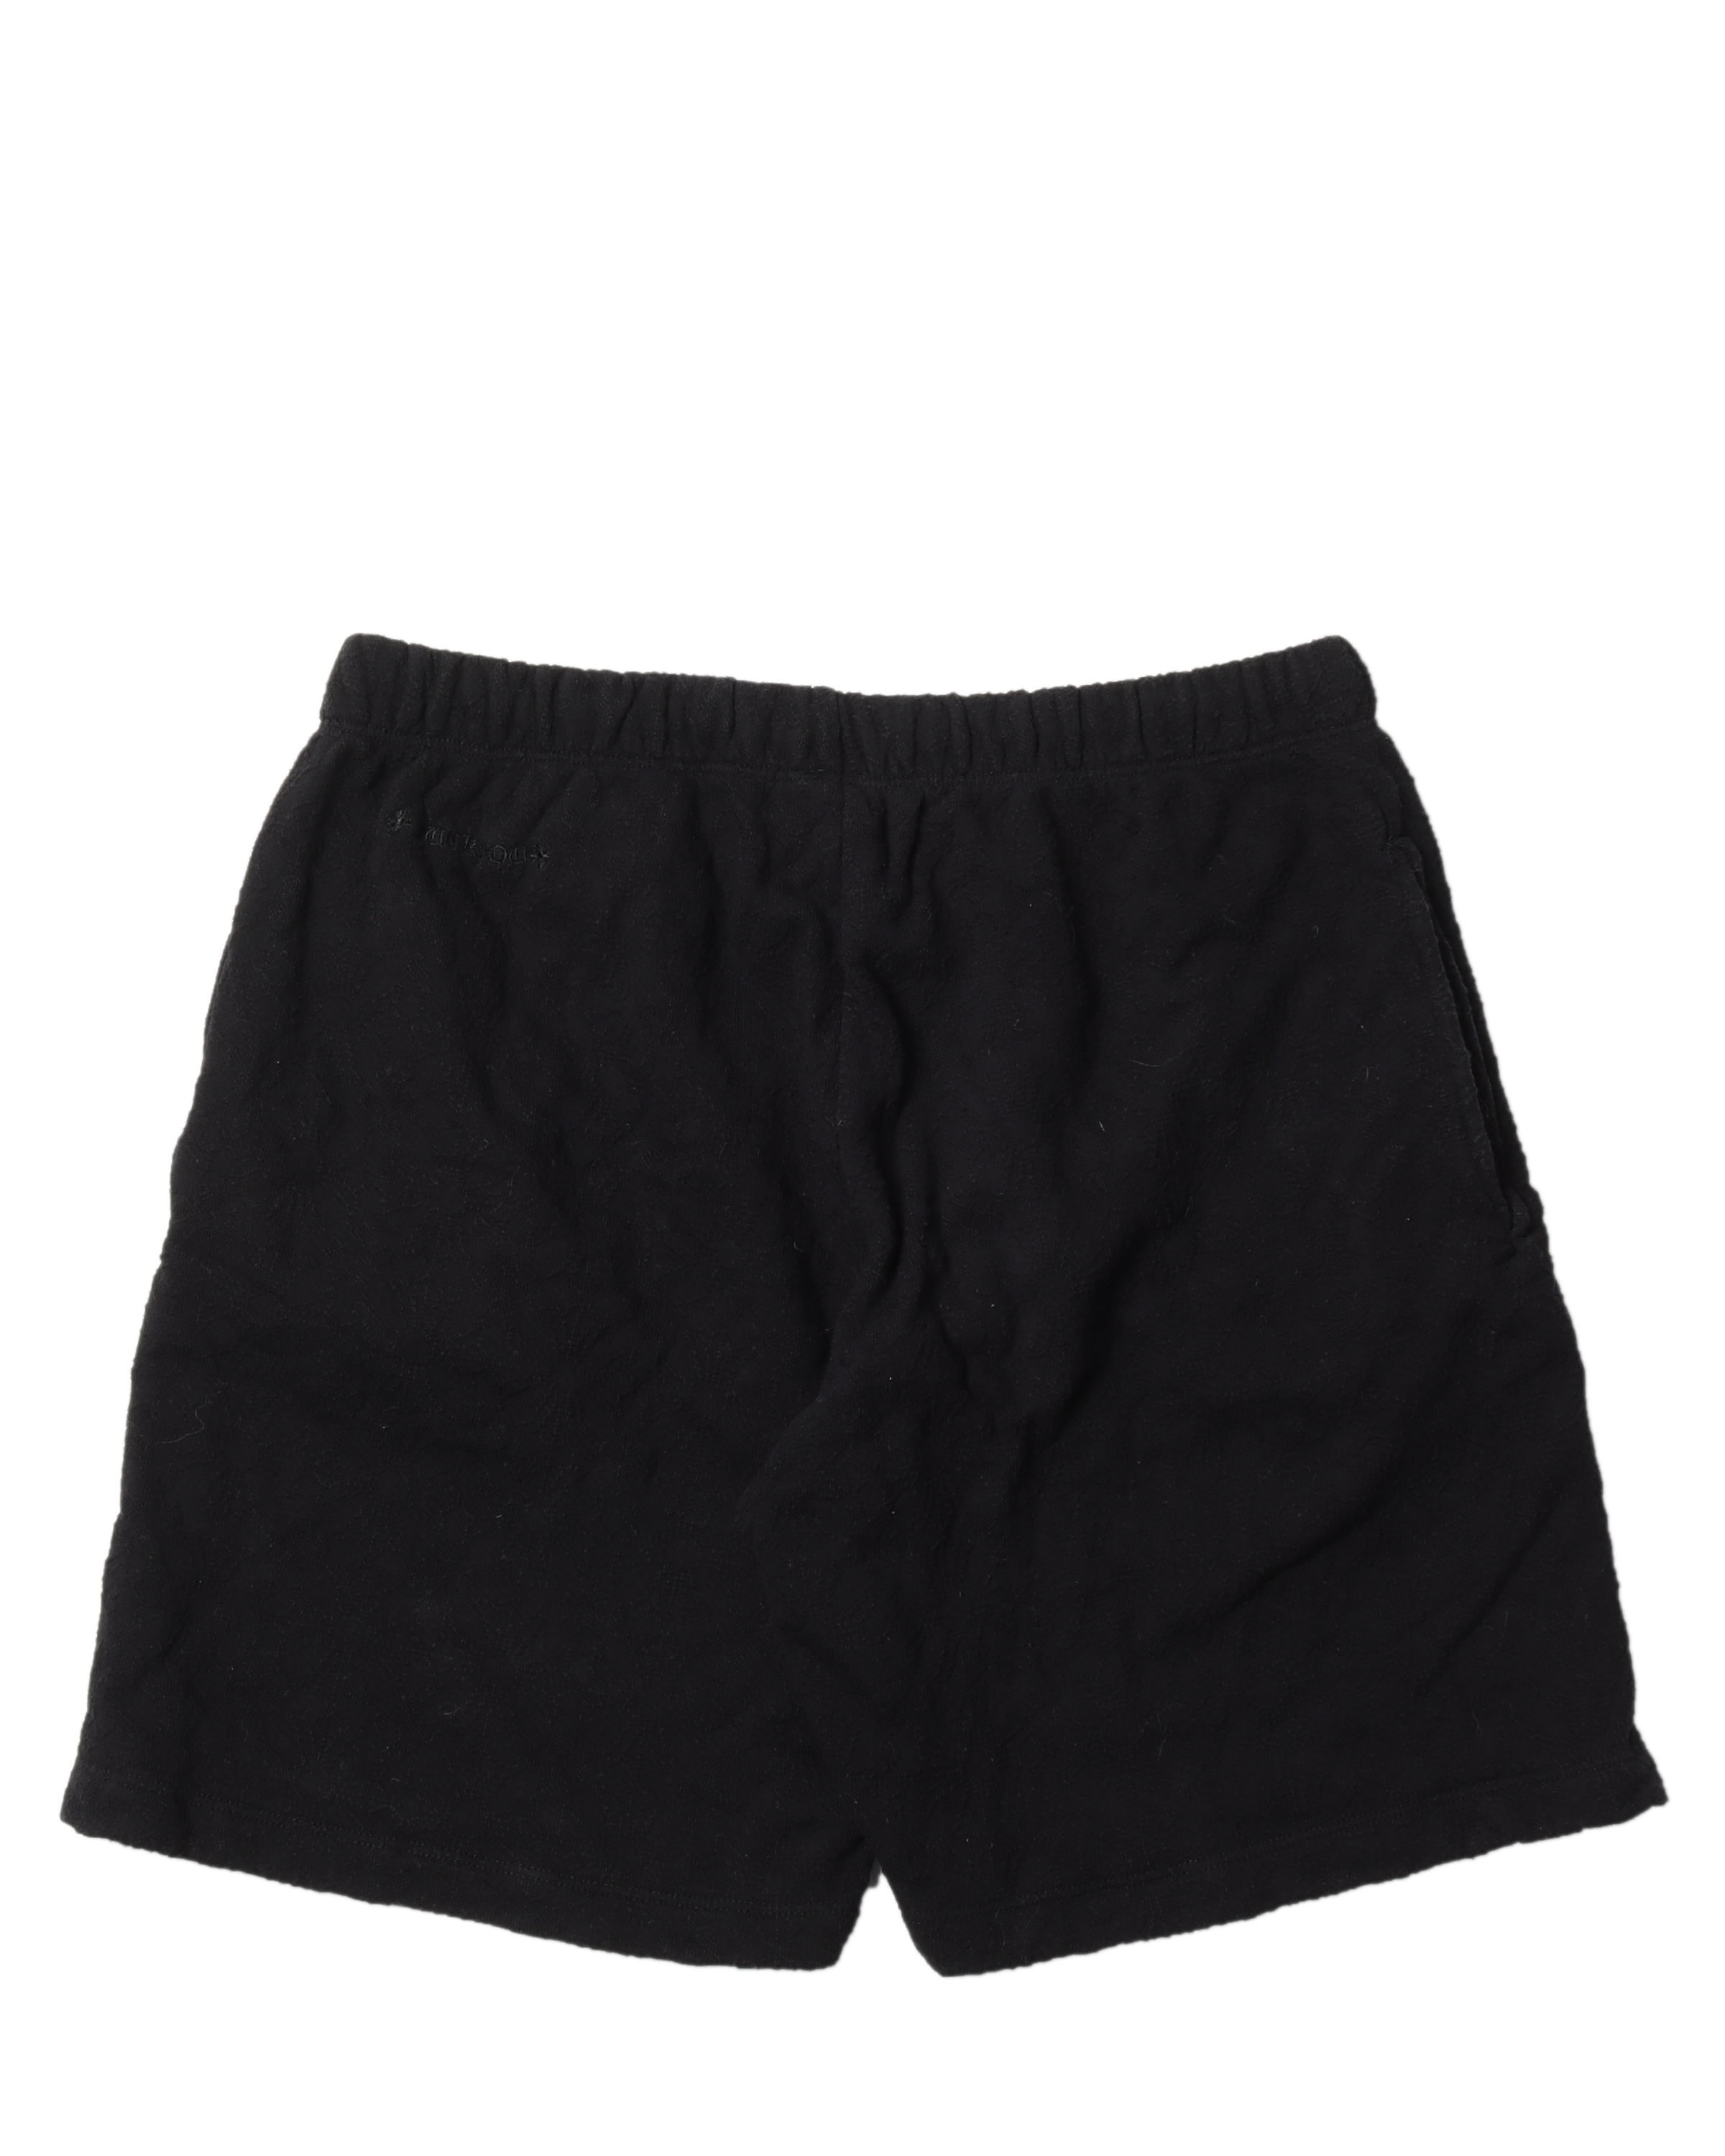 Tonal Cross-Pattern Shorts